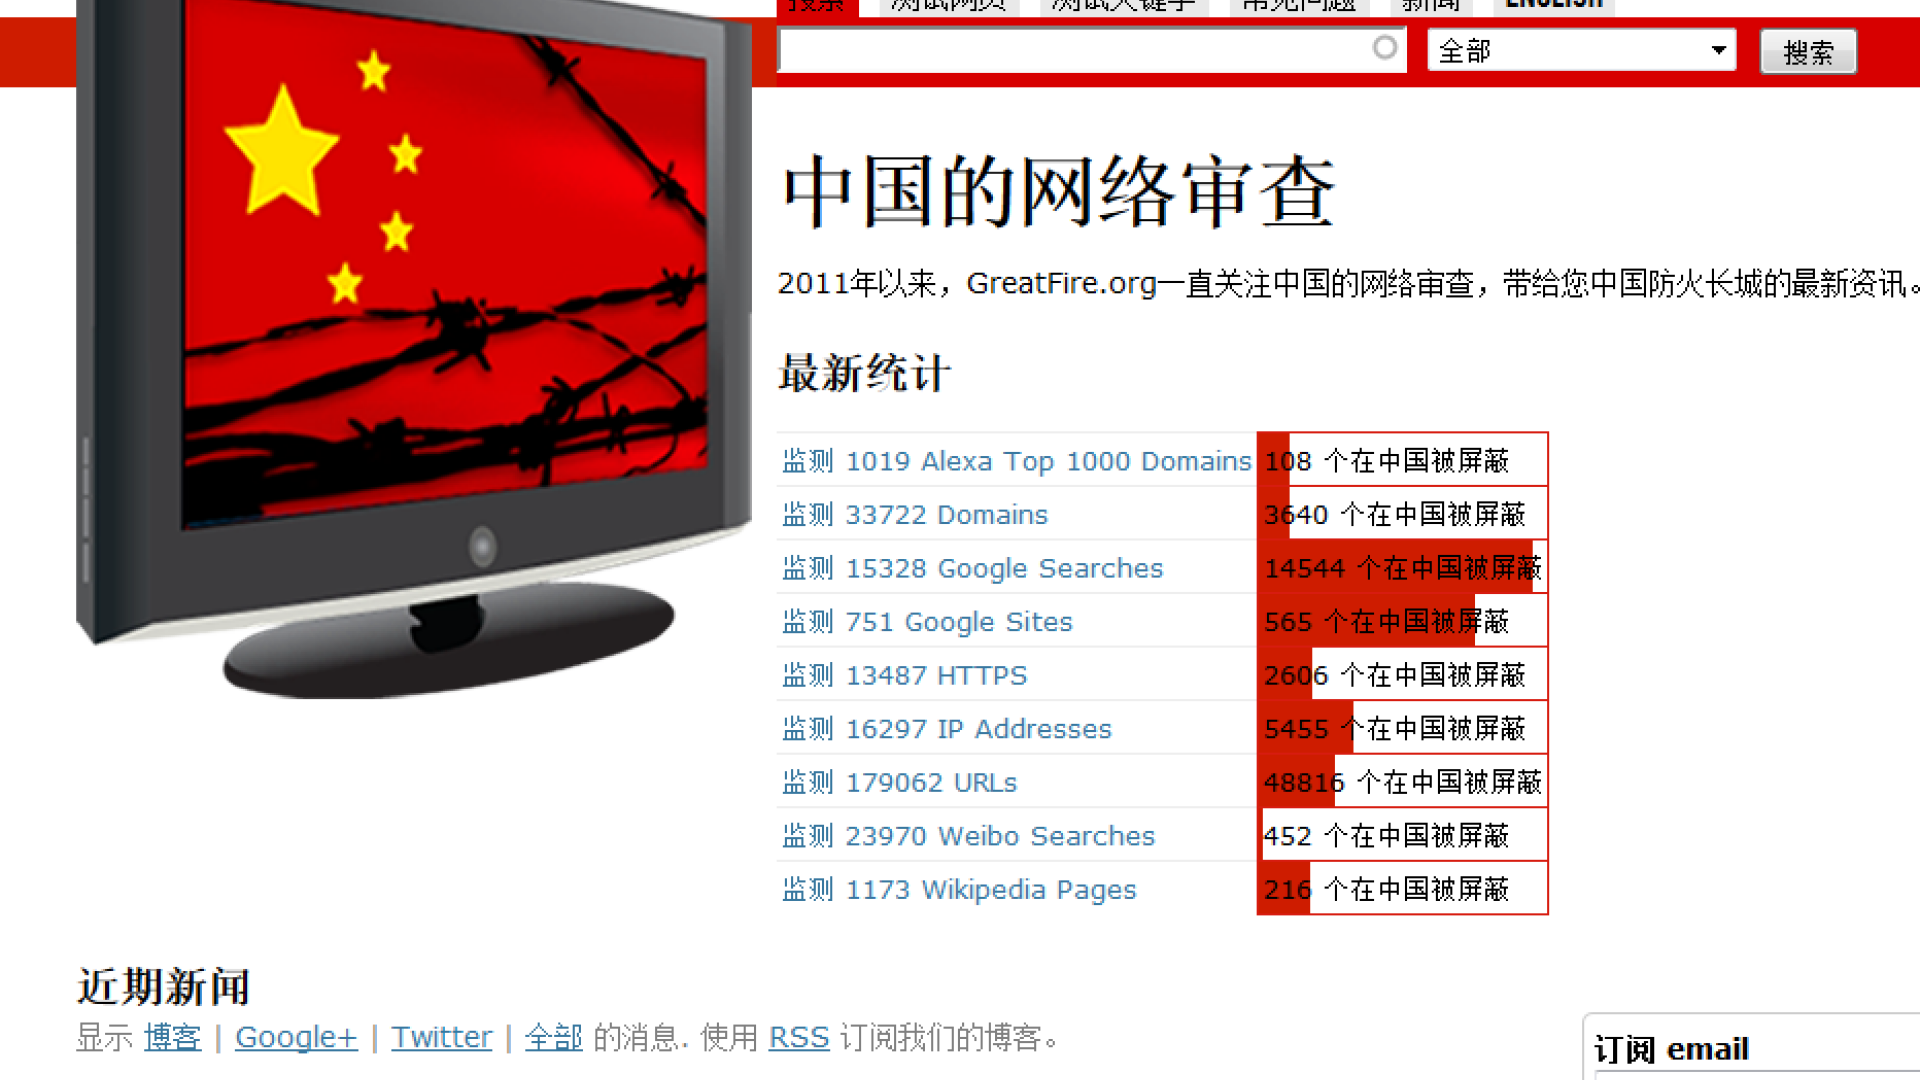 China online